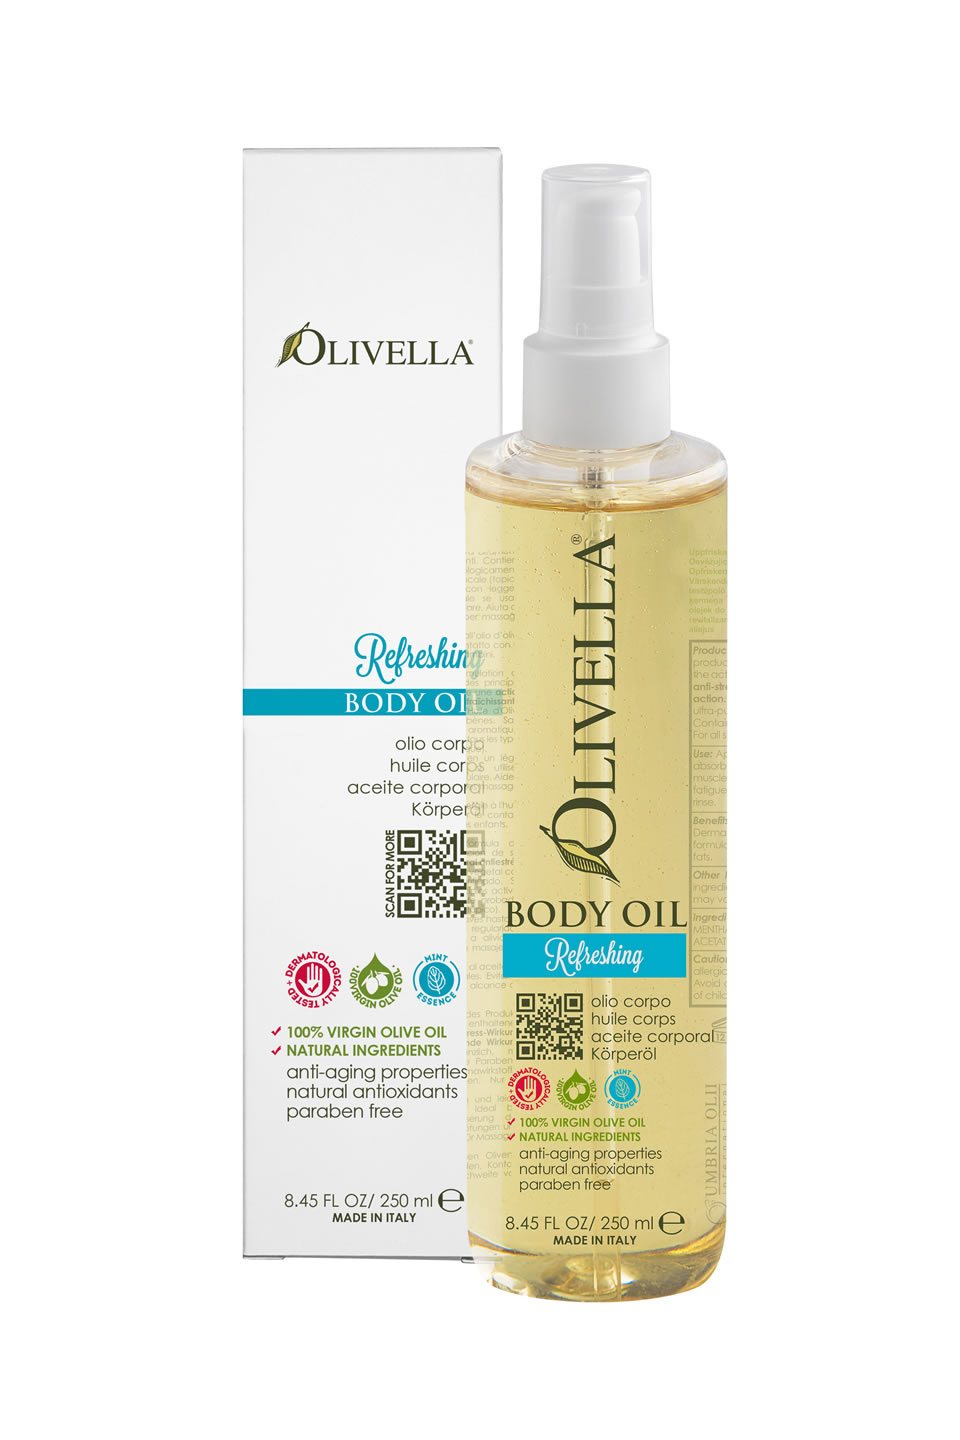 Olivella Body Oil - Refreshing - Olivella Europe